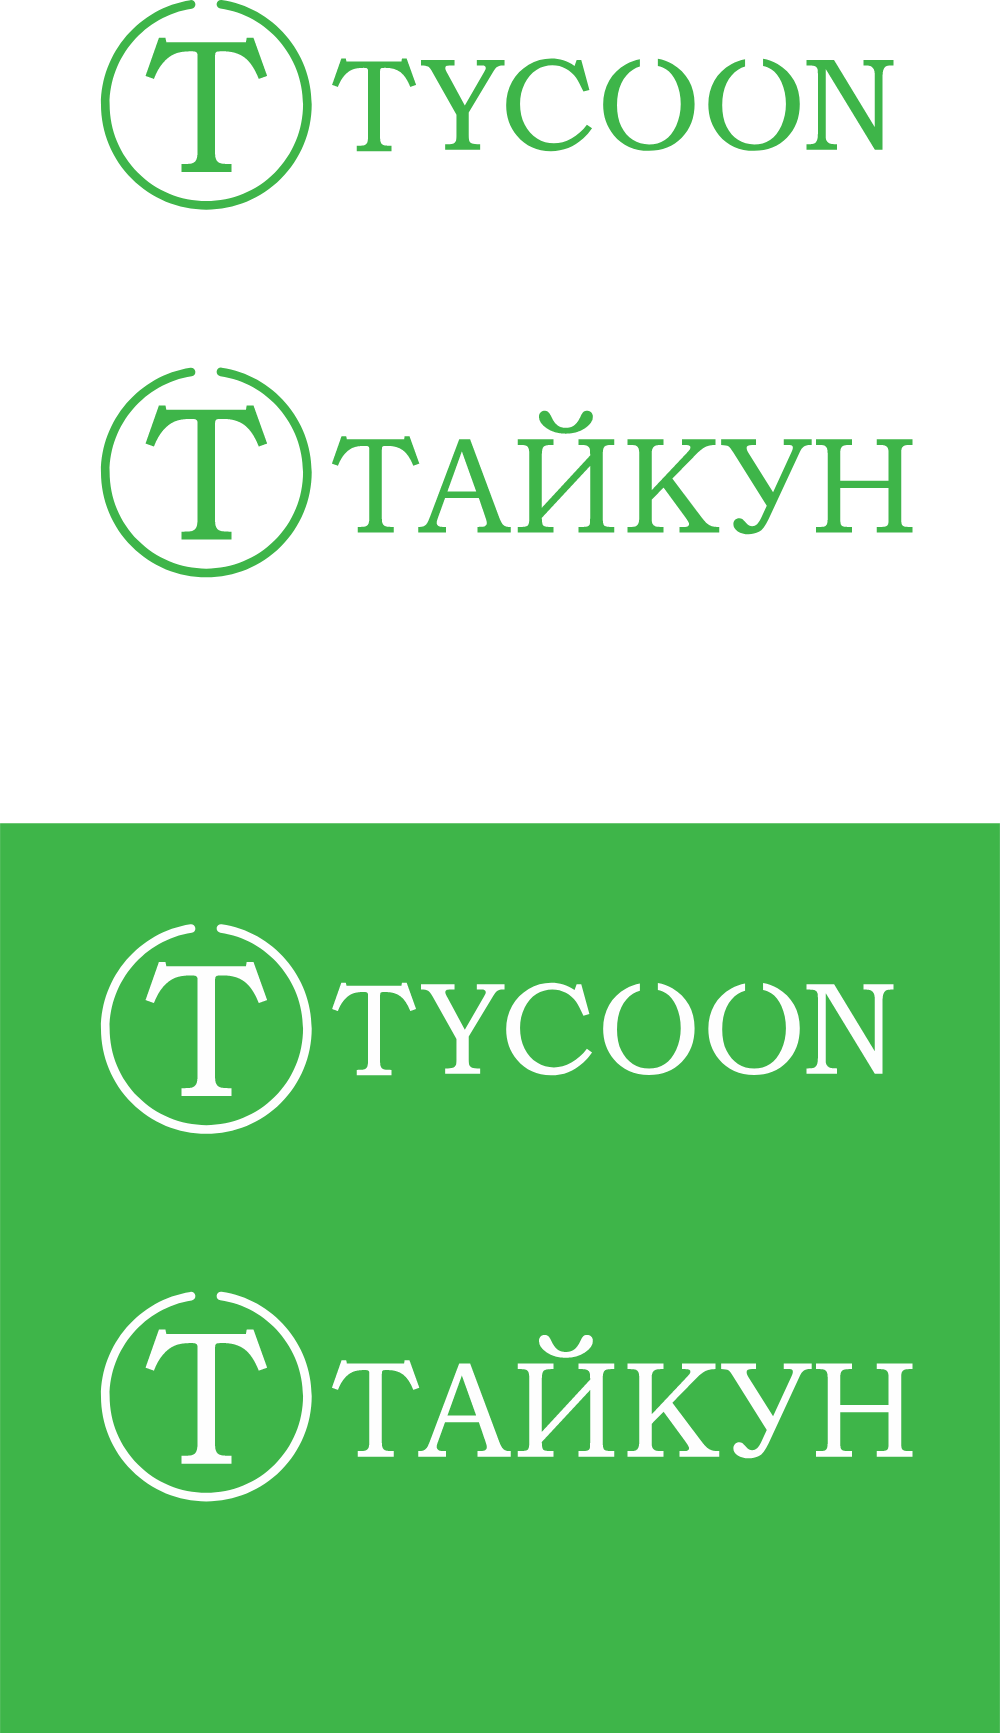 Tycoon Logo Logos